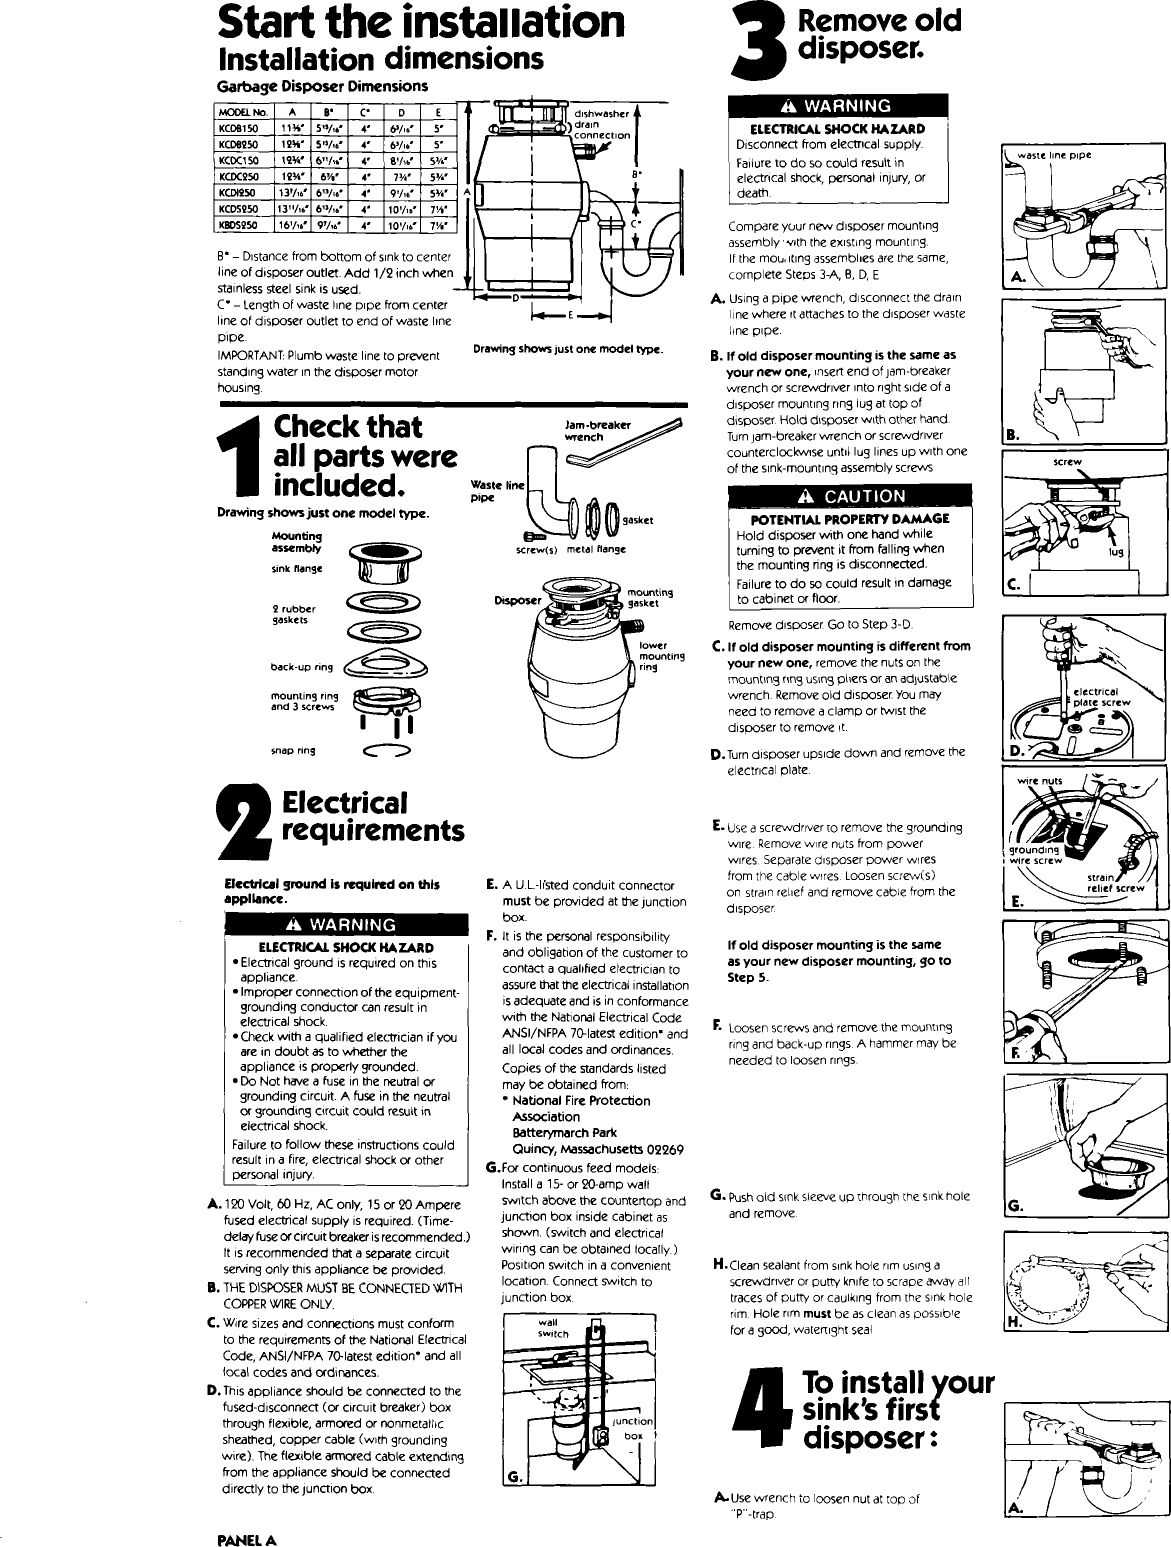 Page 2 of 5 - KITCHENAID  Garbage Disposal Manual L0912158